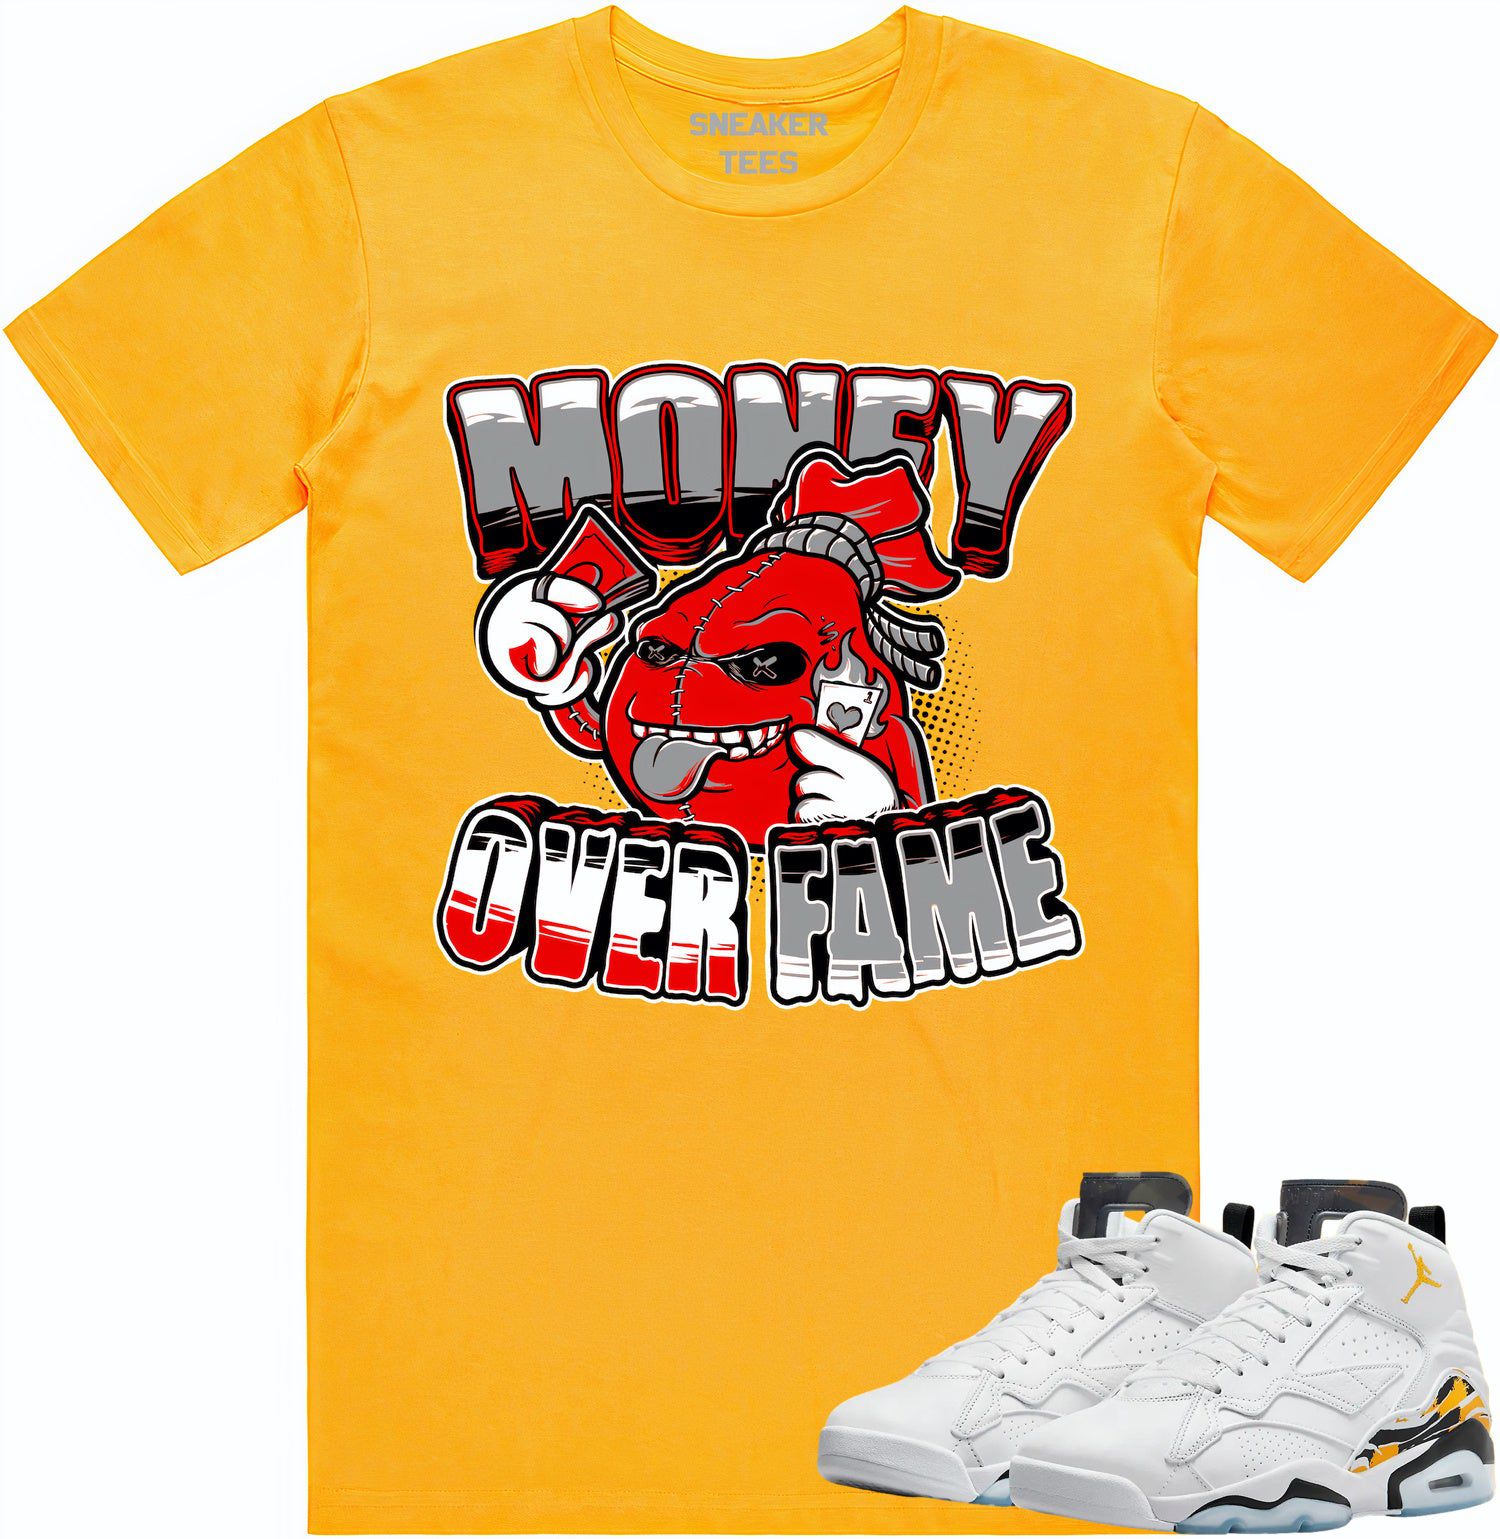 Jordan MVP 678 Yellow Ochre Shirt - Ochre Sneaker Tees - Money Fame